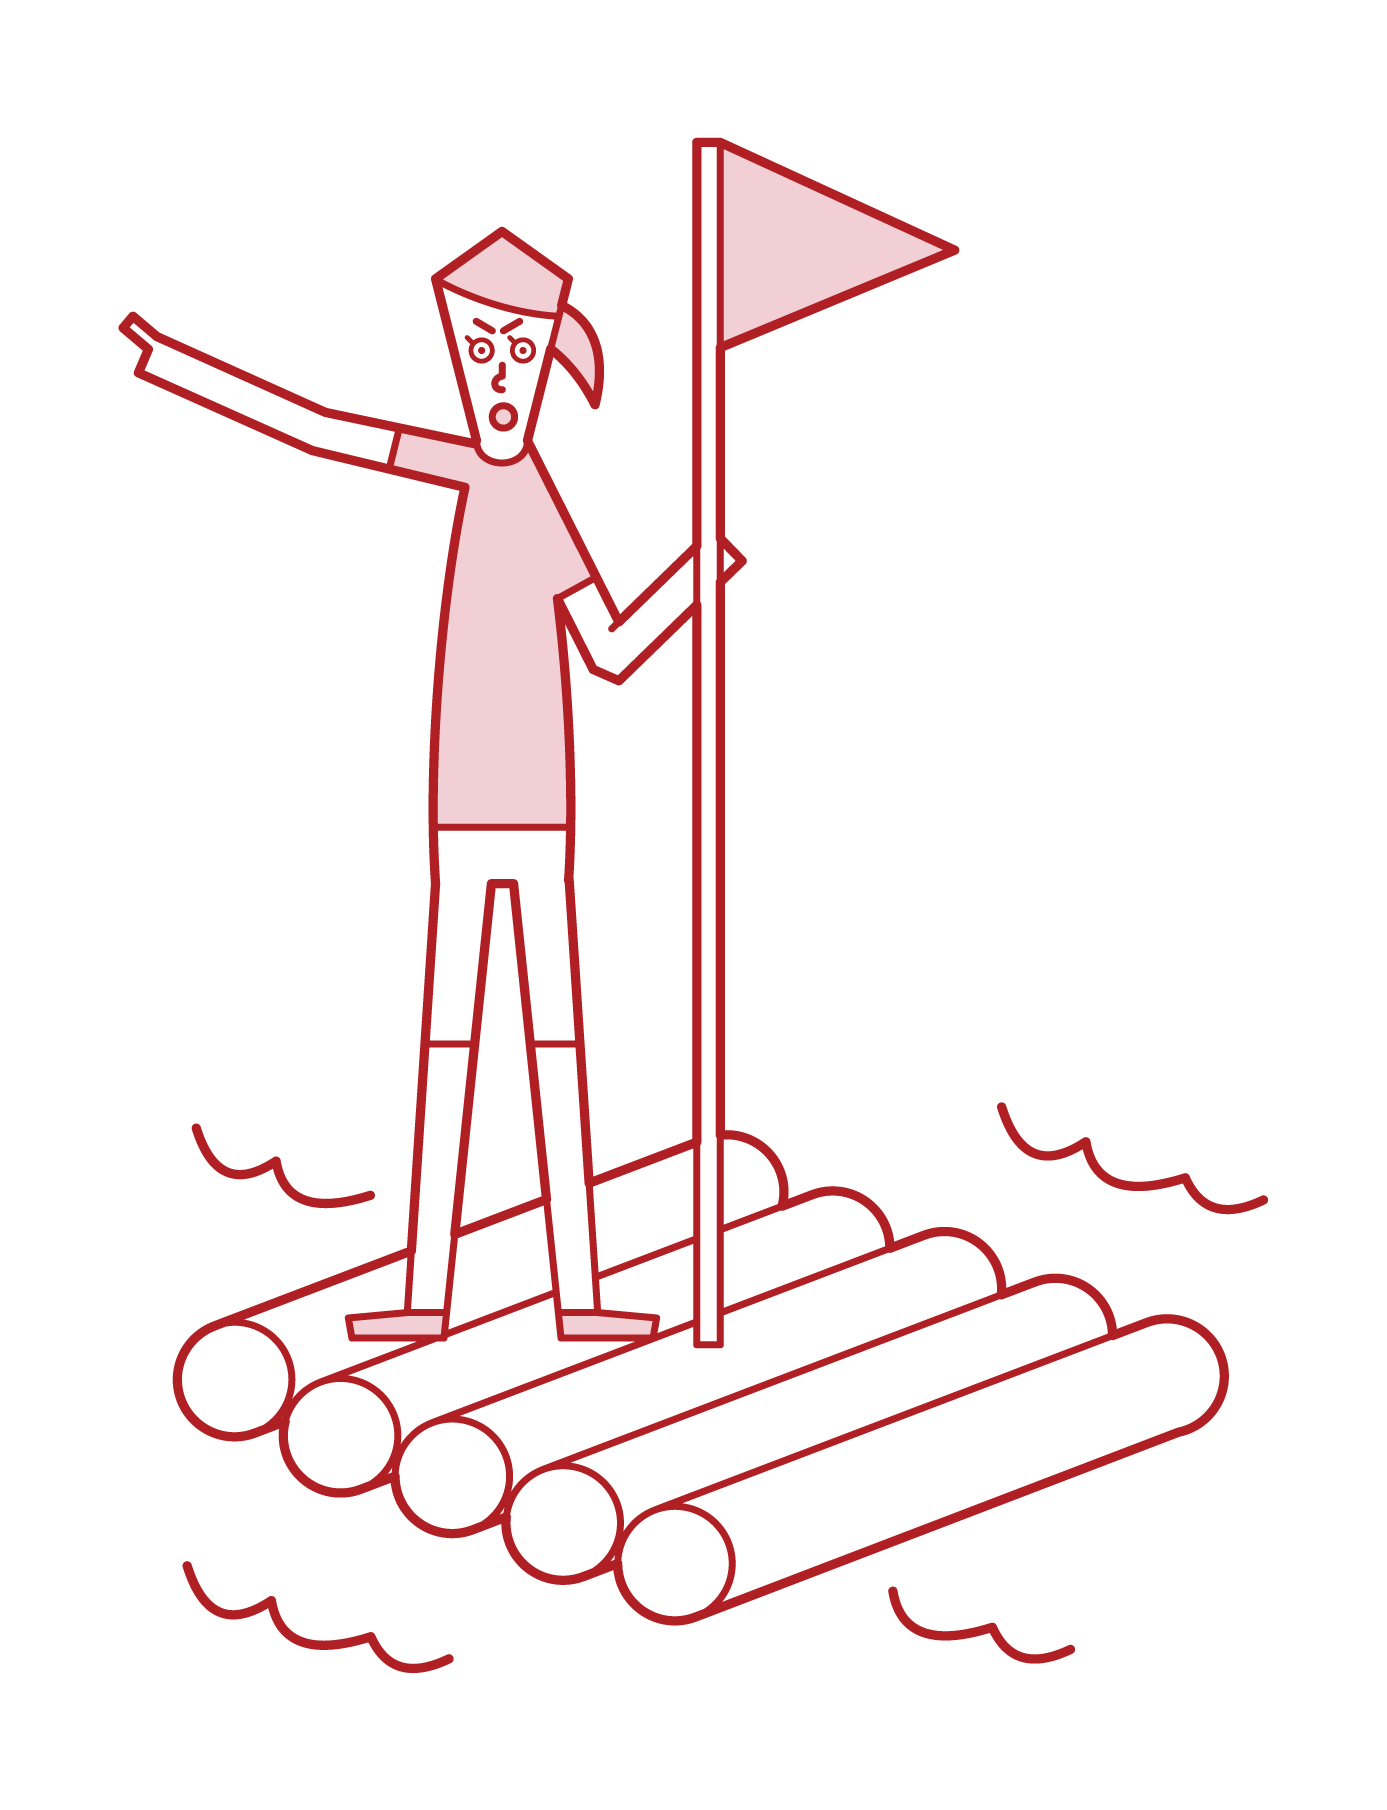 乘坐木筏旅行的人（女性）的插圖